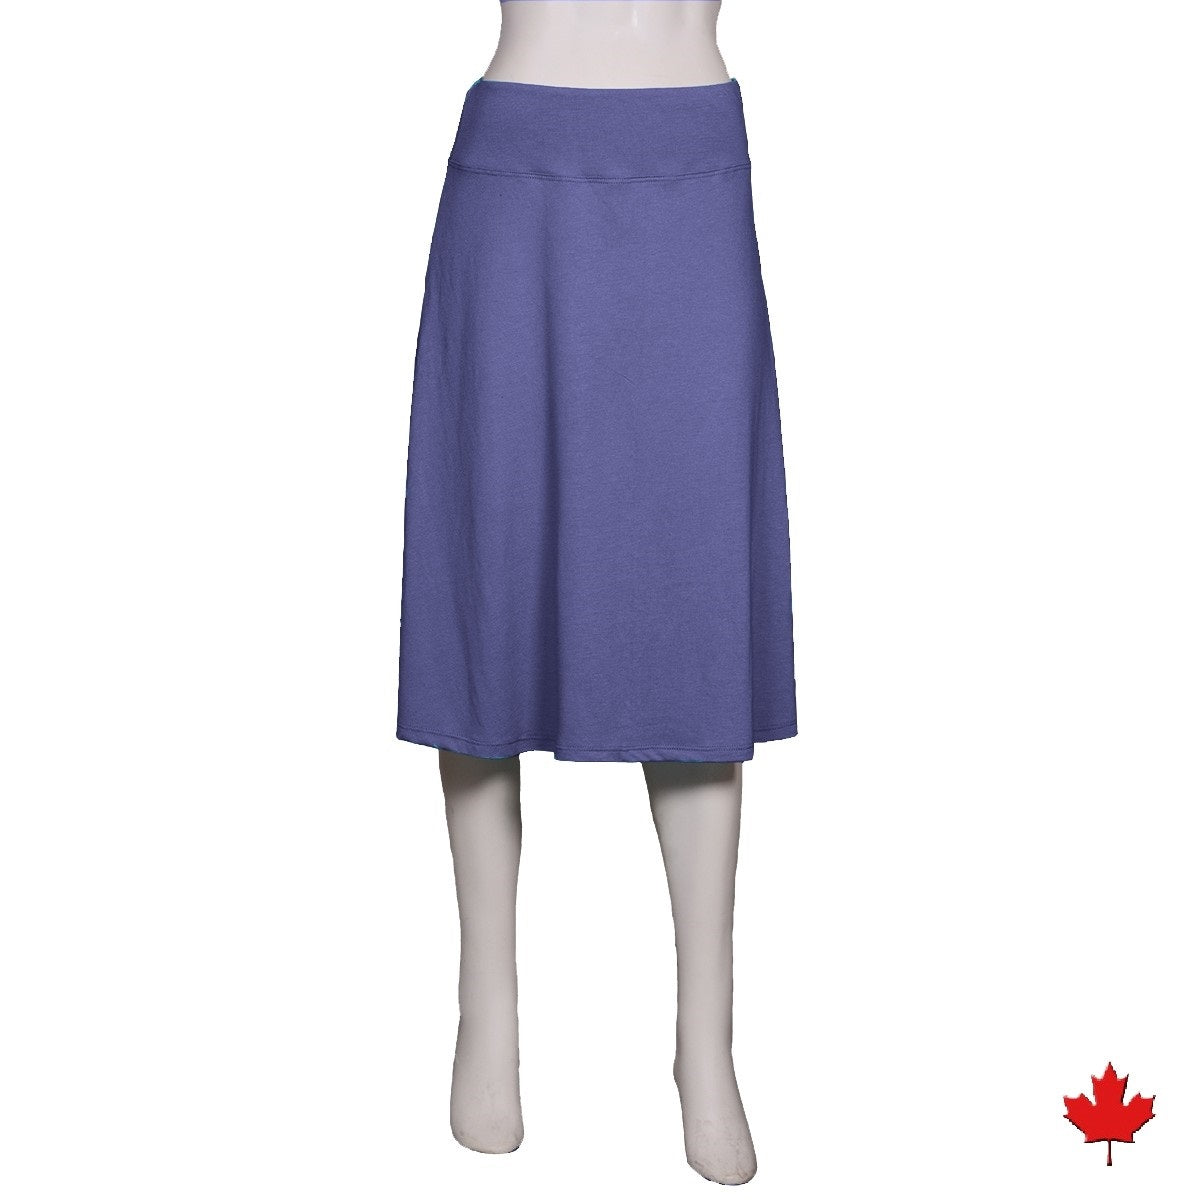 Multi Purpose Tube-yoga Skirt-tube Skirt-leggings Skirt-mini Skirt-tube Top- light Blue Skirt-coverup Skirt-cover Skirt-yoga Clothing-aurora 